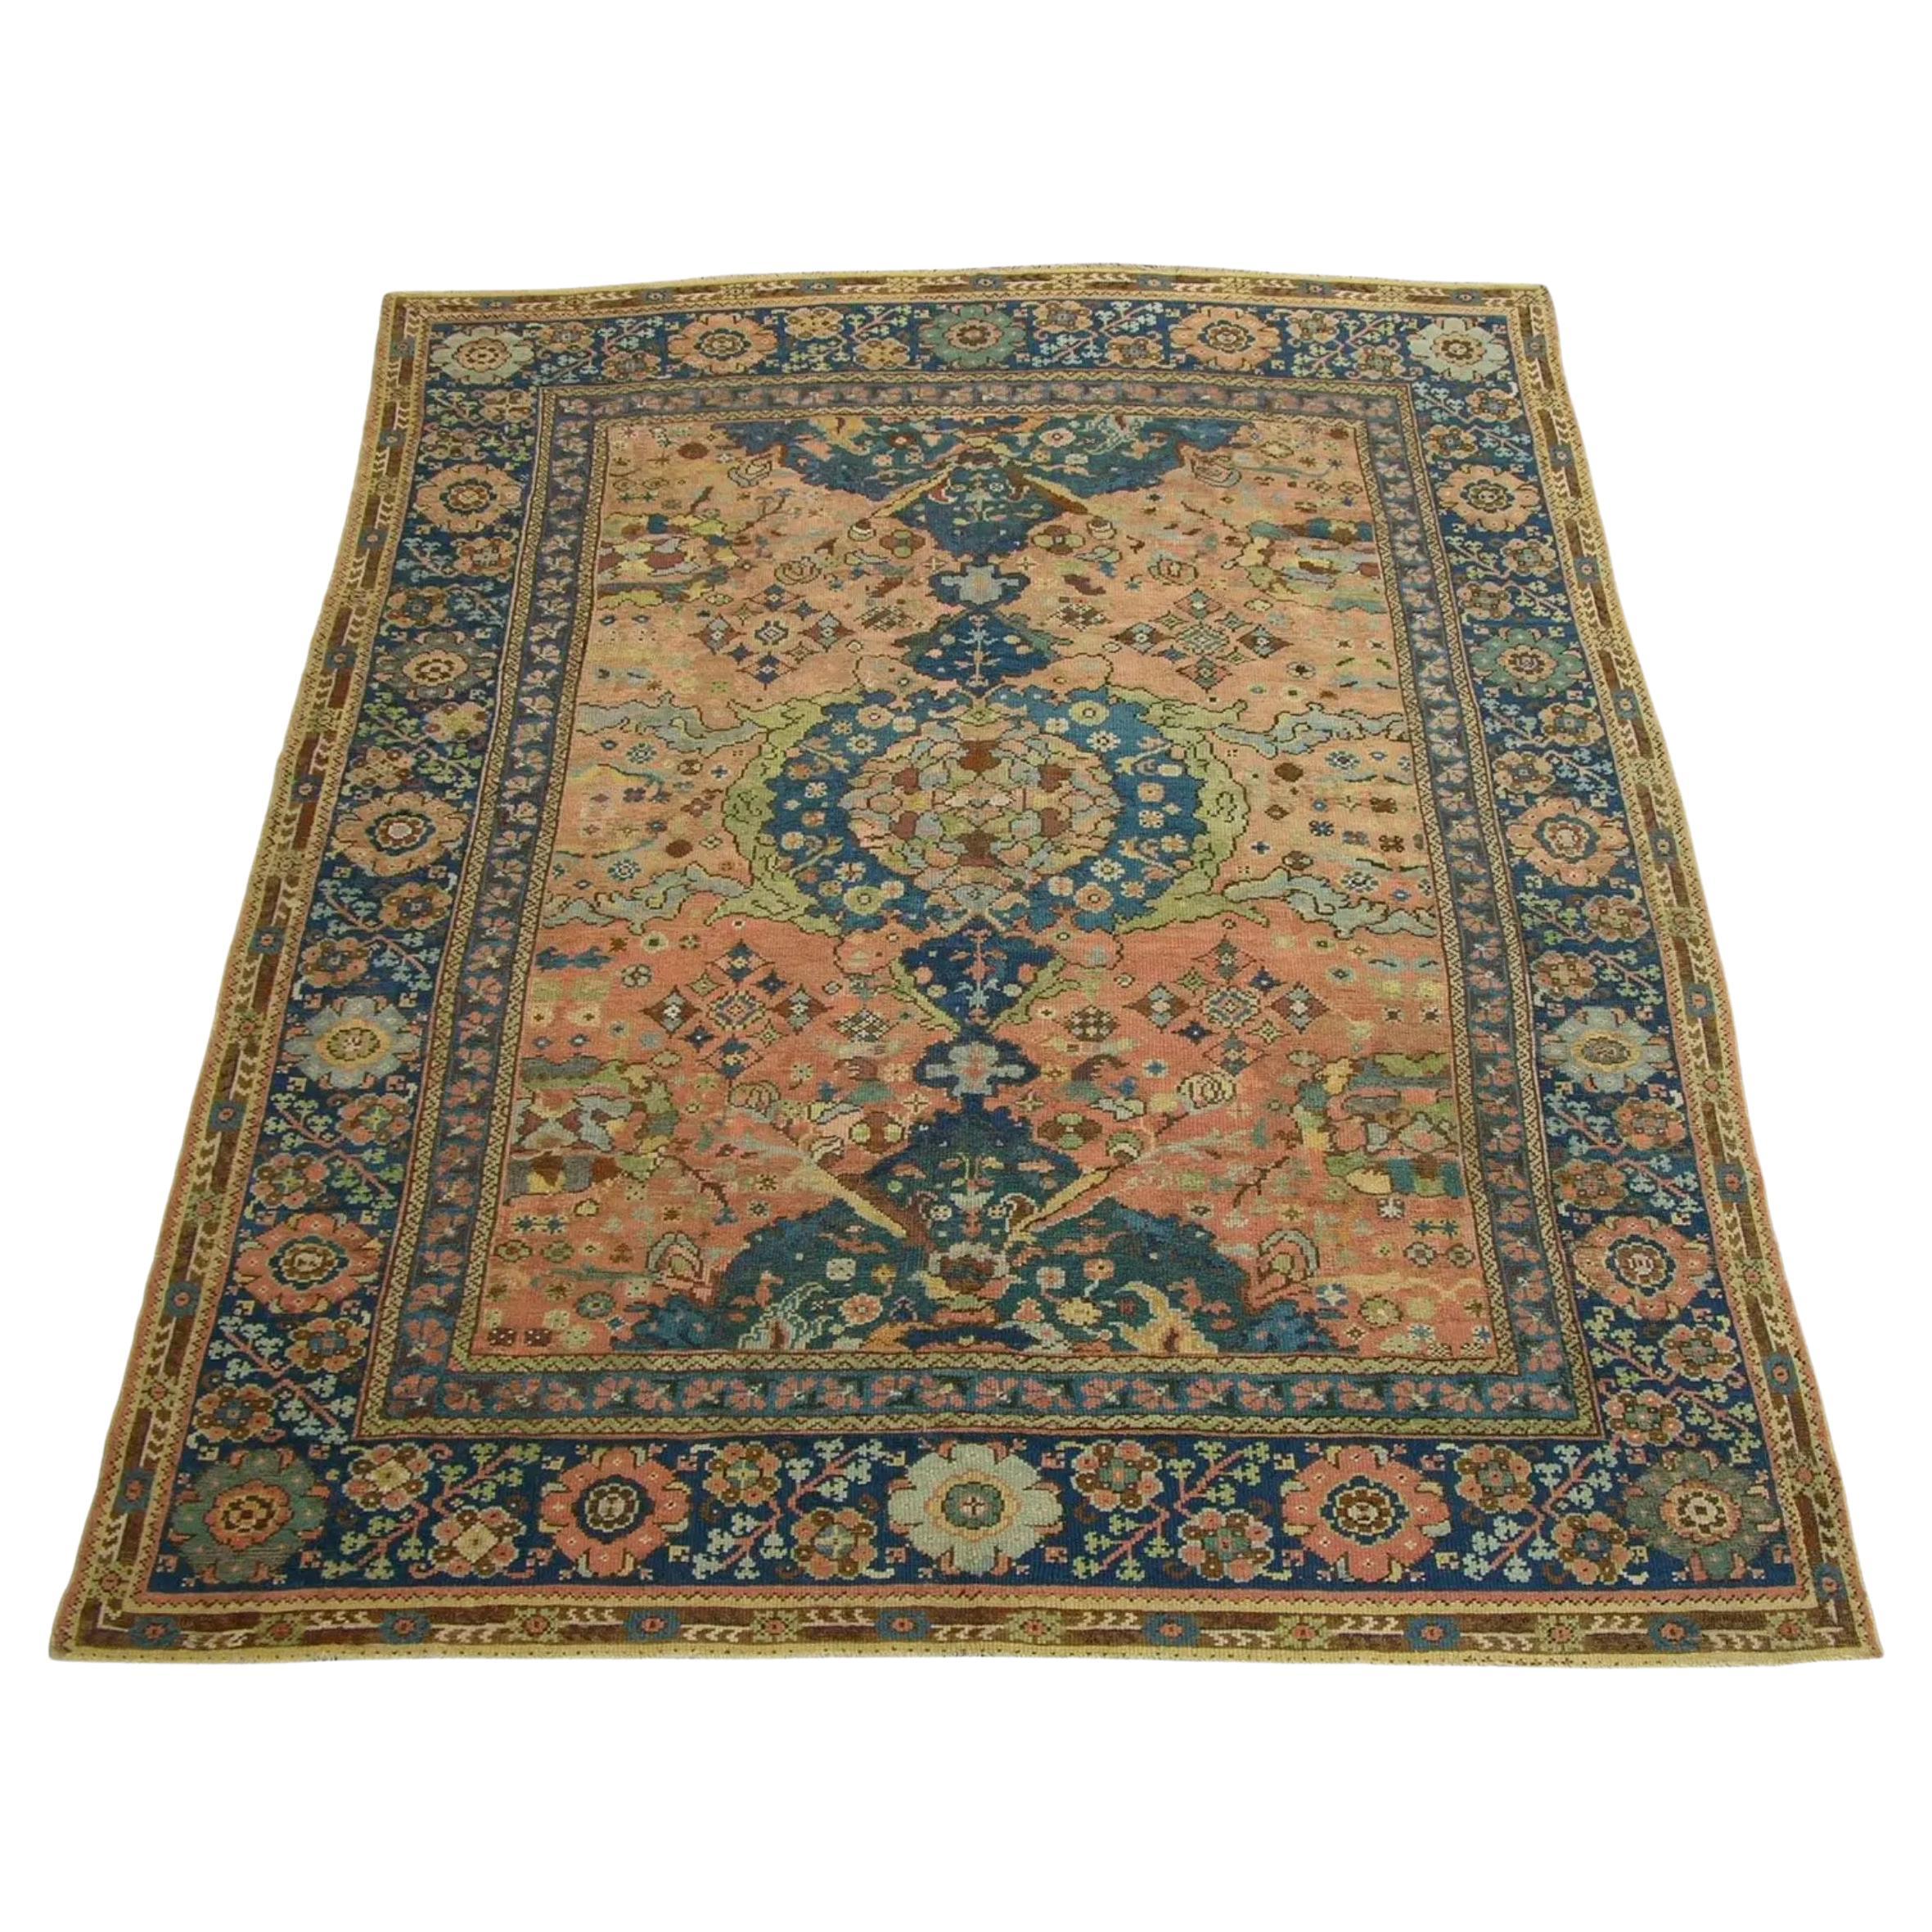 Türkischer Teppich aus dem frühen 18. Jahrhundert 10'7'' X 8'10''